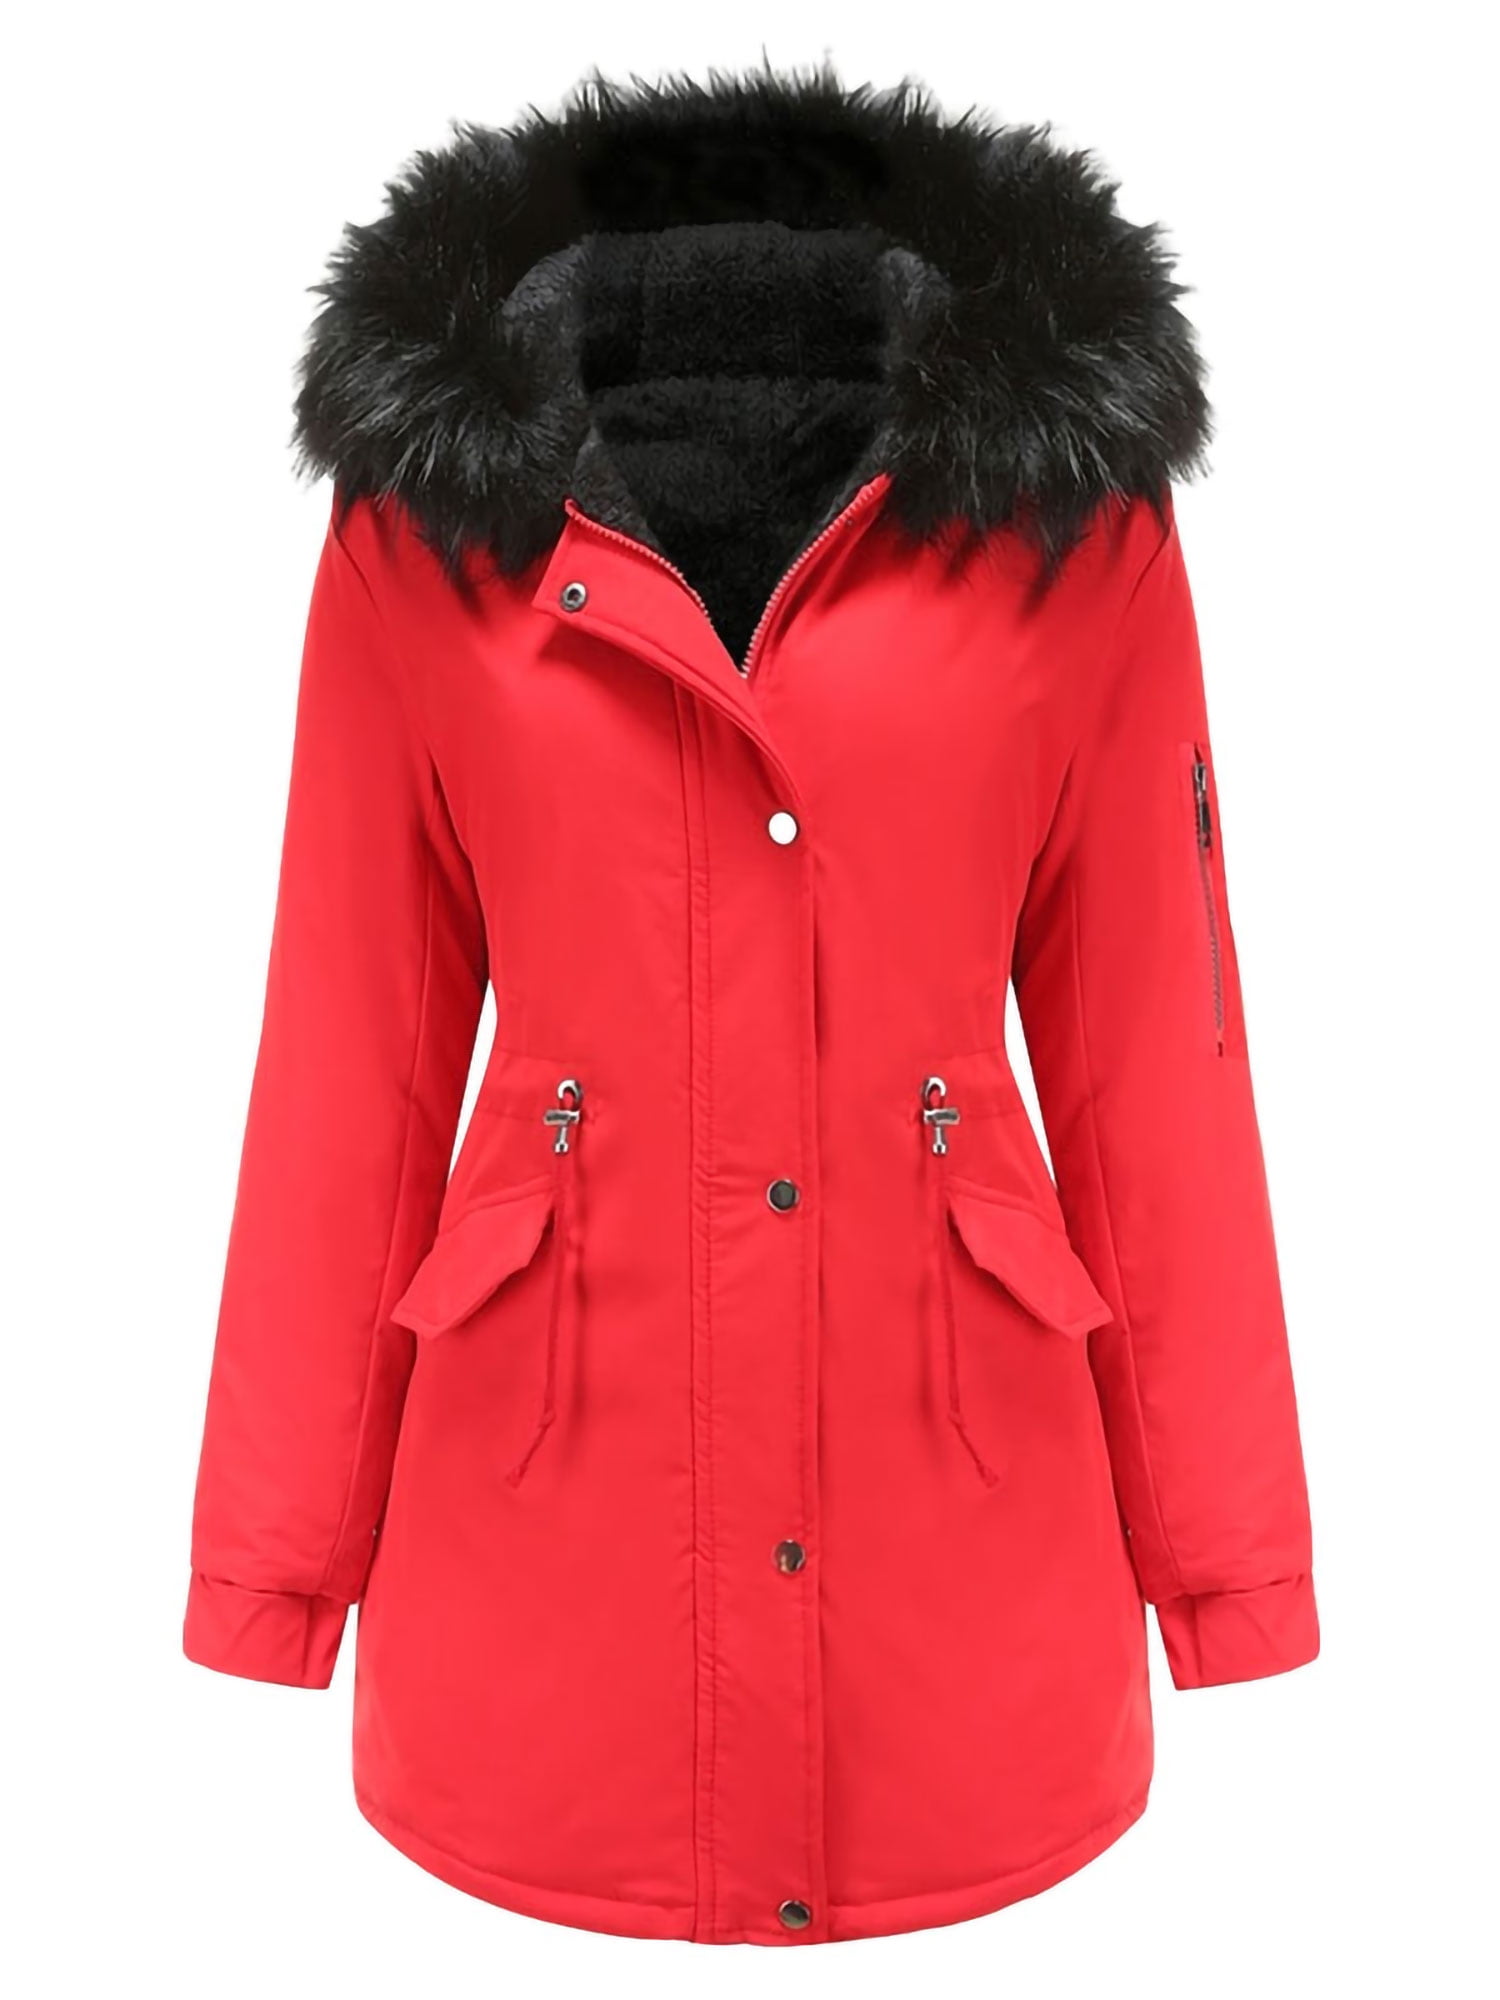 Women's Coat Fur Lined Trench Winter Jacket Hooded Parka Overcoat Warm Outwear 